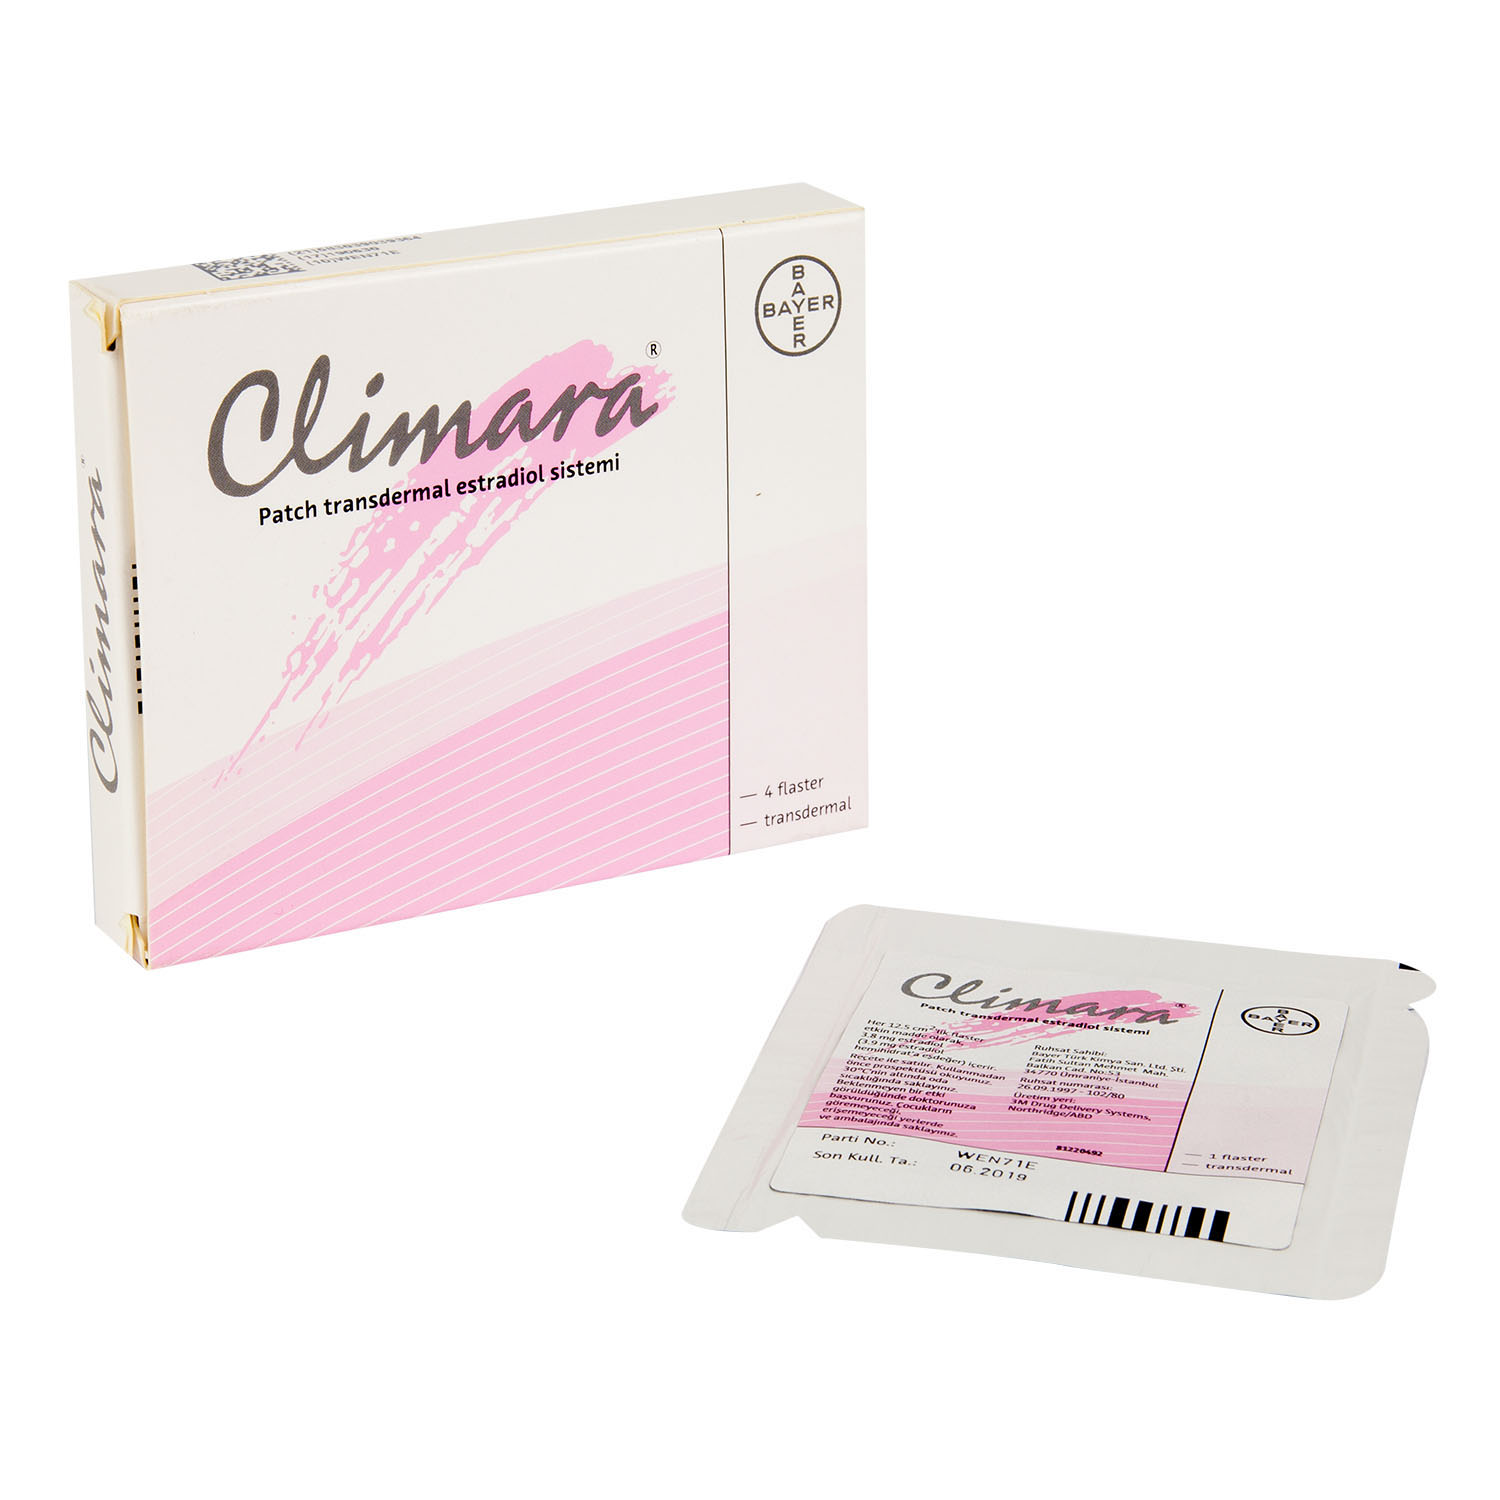 クリマラ50 3 8mg 通販 女性ホルモン剤 医薬品個人輸入代行くすりエクスプレス